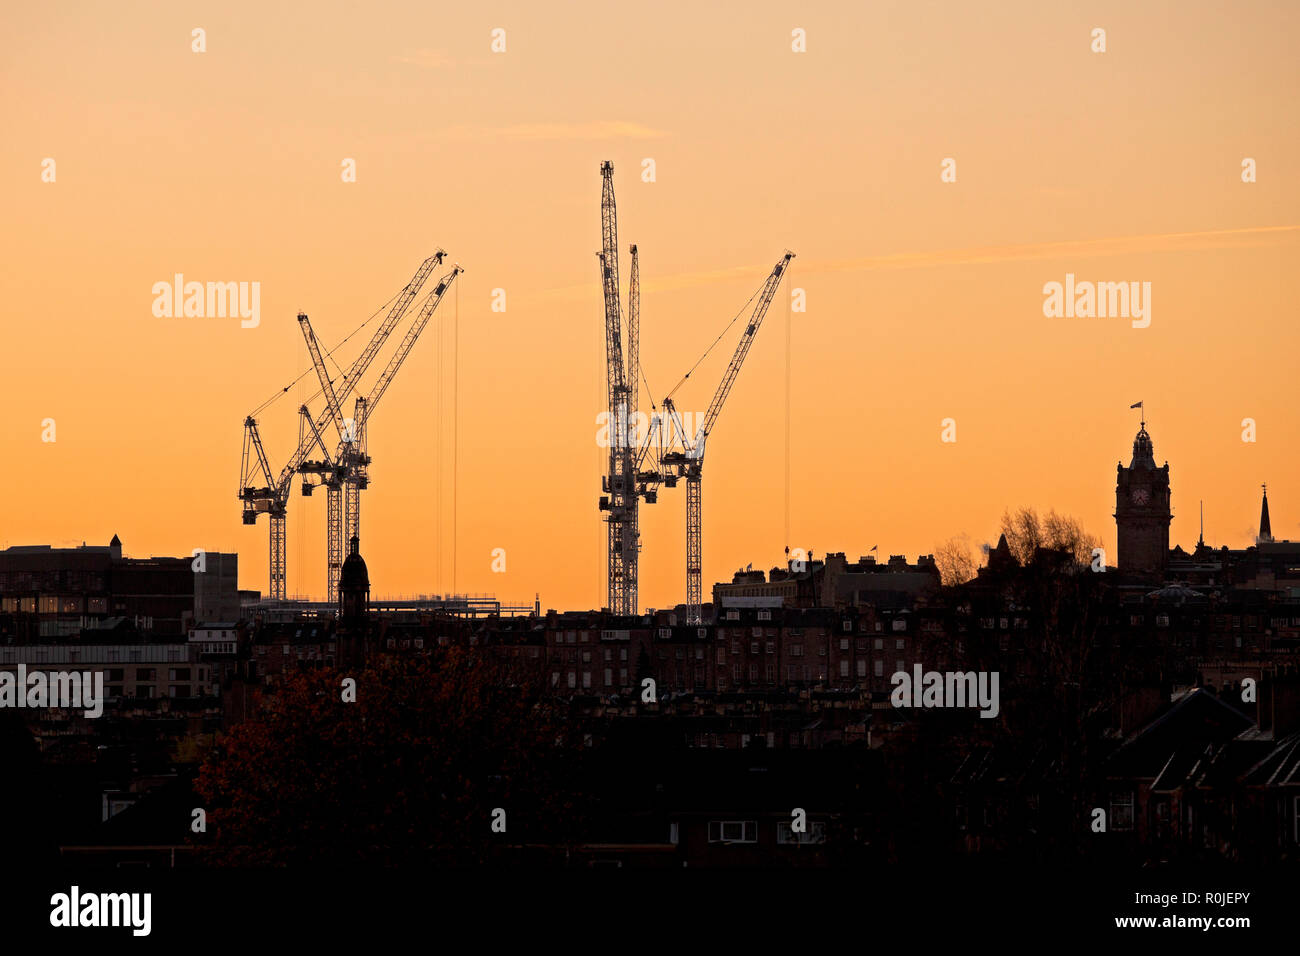 Industriekrane im Stadtzentrum von Edinburgh 2018 gegen Sonnenaufgang Himmel silhouetted, Princes Street, Edinburgh, Schottland, Großbritannien Stockfoto